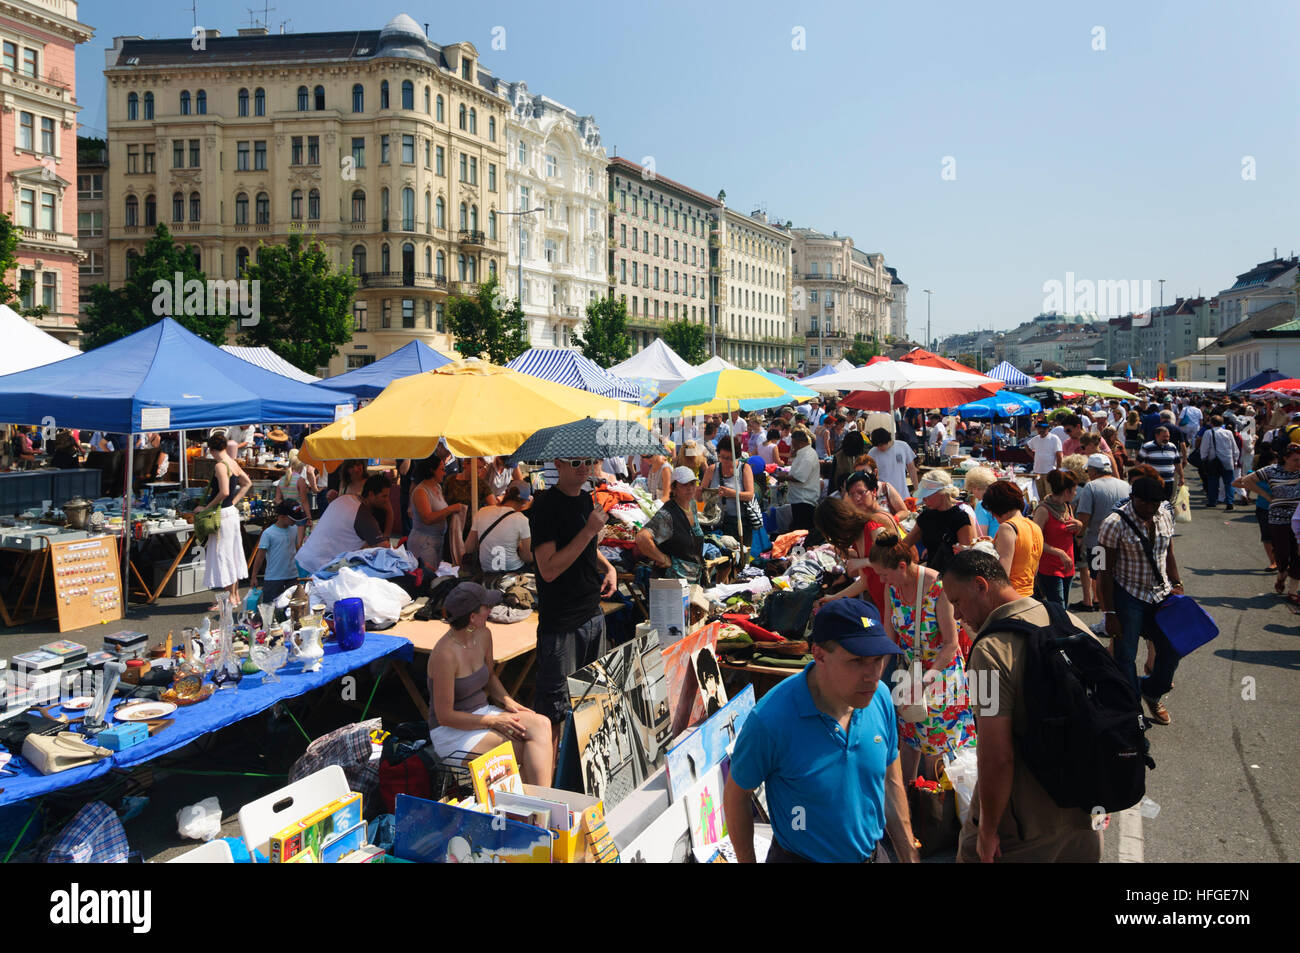 Wien, Vienna: flee market at the Naschmarkt, Wien, Austria Stock Photo